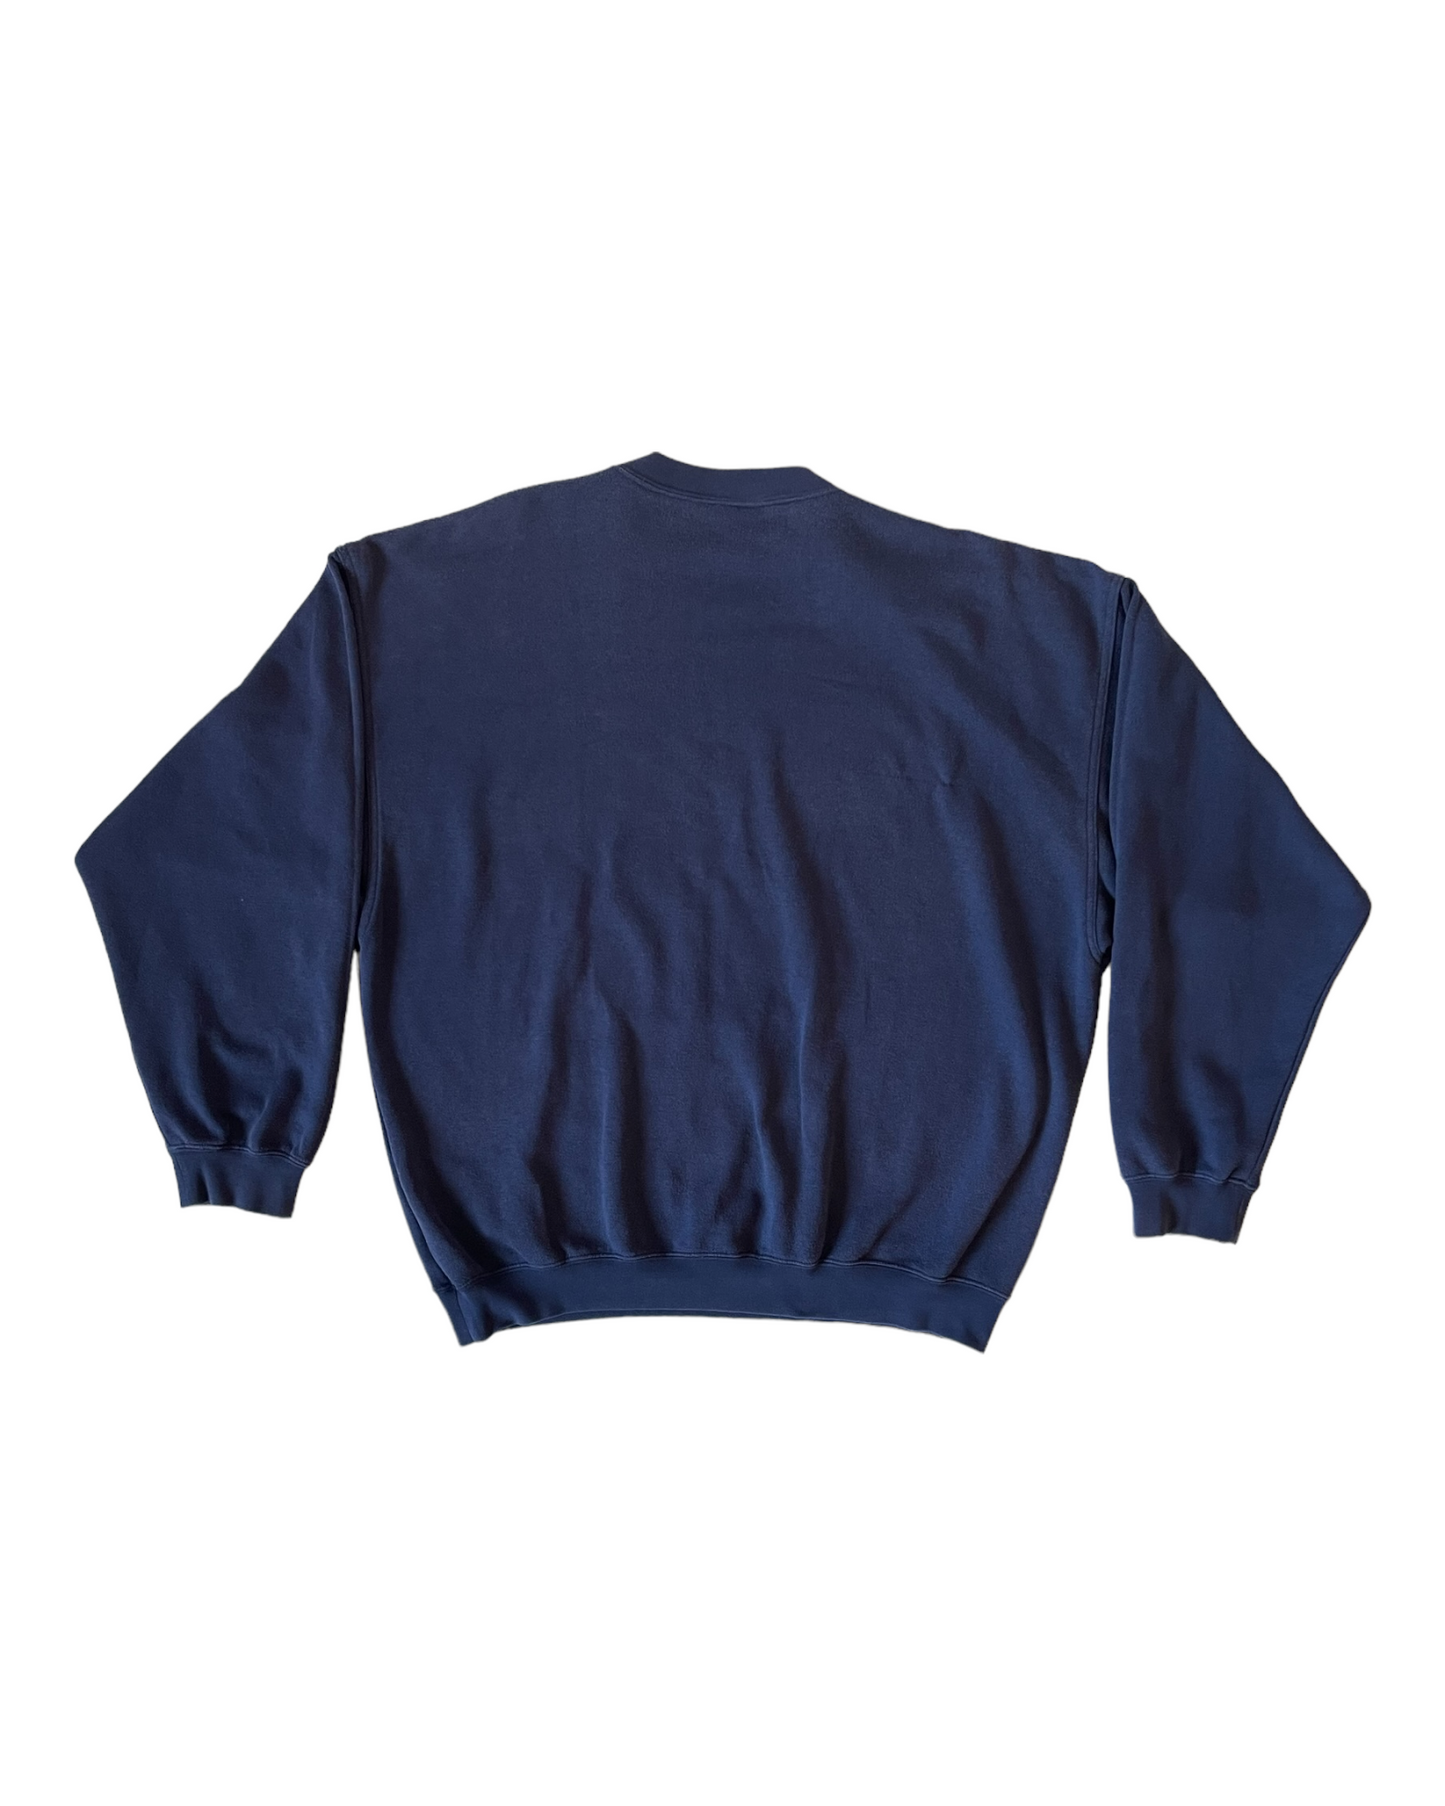 Vintage 90's Adidas Trefoil Sweatshirt Crew Neck Size L-XL Blue